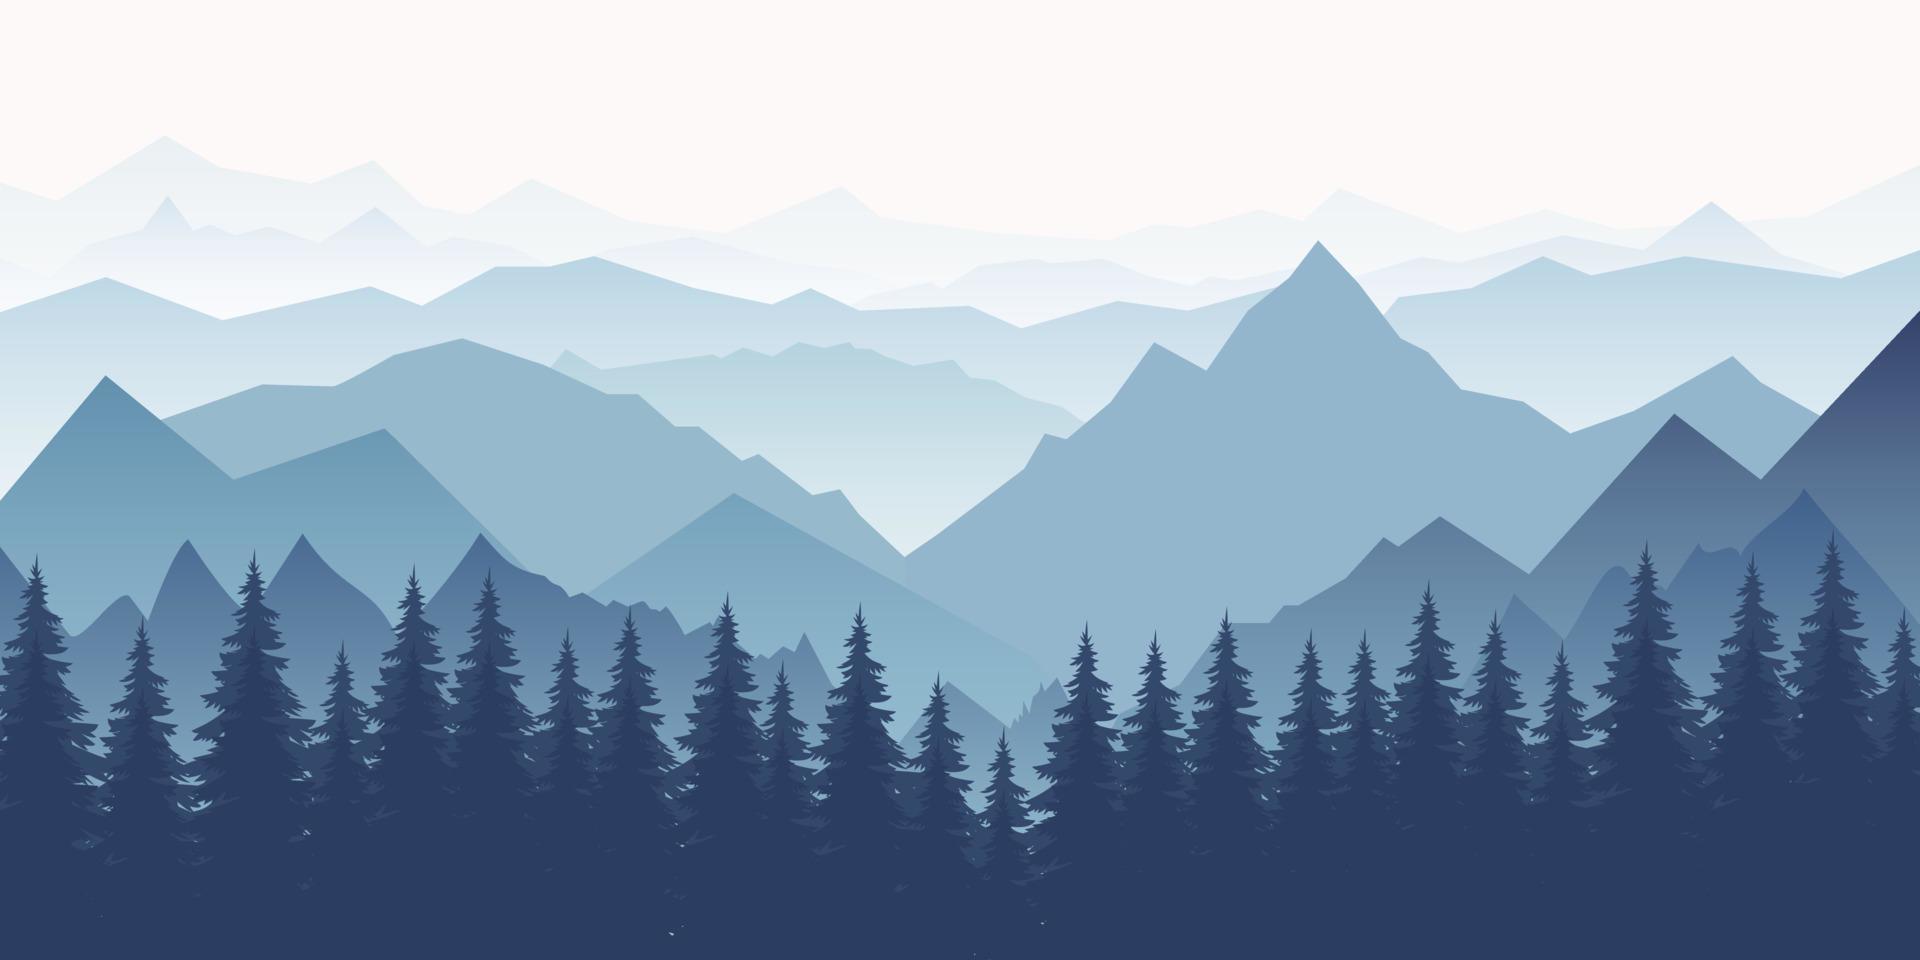 paysage de montagne horizontal avec des arbres. vue panoramique sur les crêtes et la forêt dans le brouillard, illustration vectorielle. vecteur